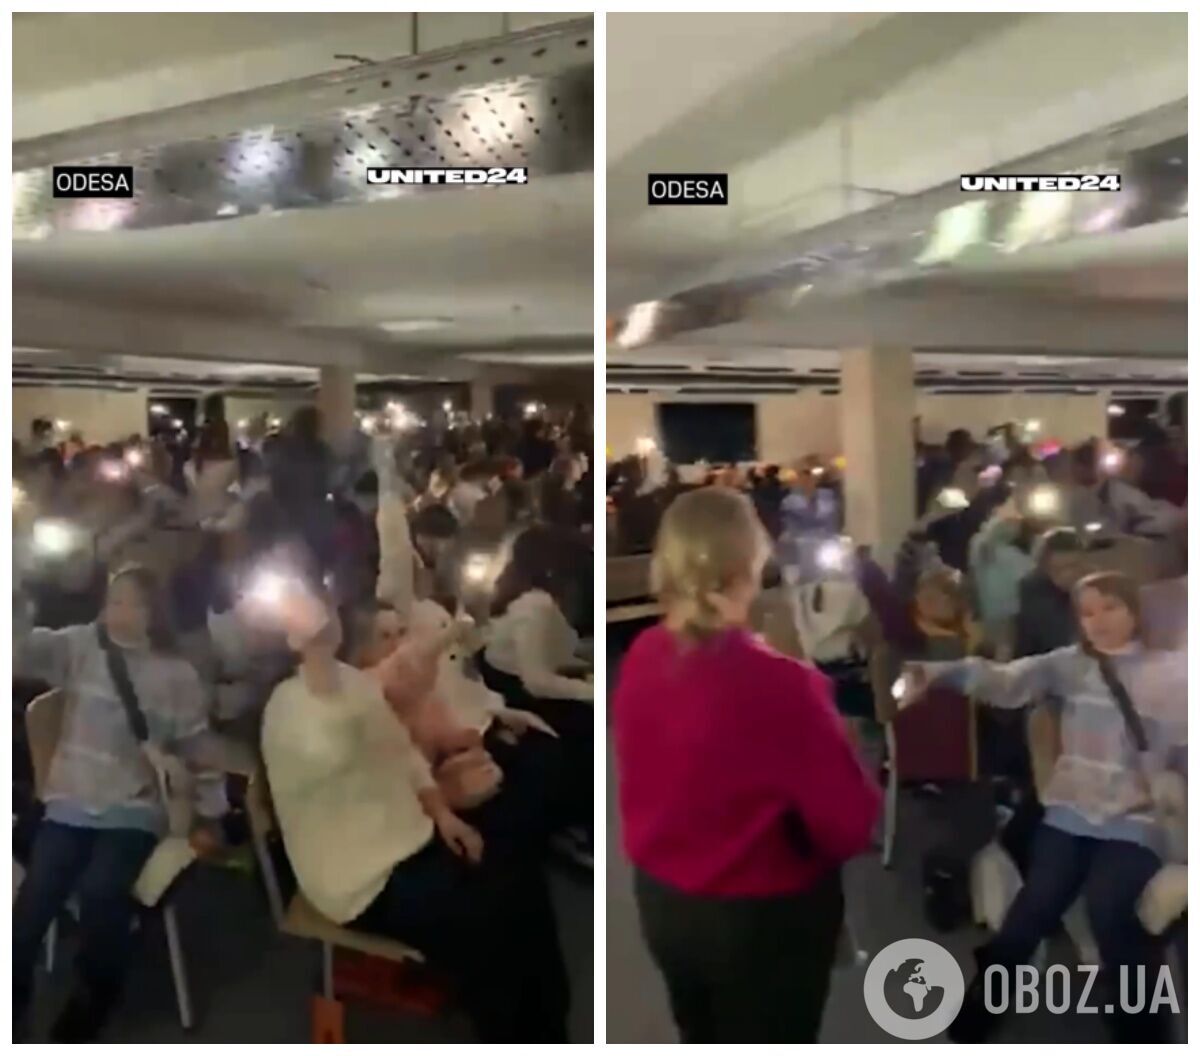 Видео с детьми, которые поют в укрытии в Одессе, умилило пользователей.